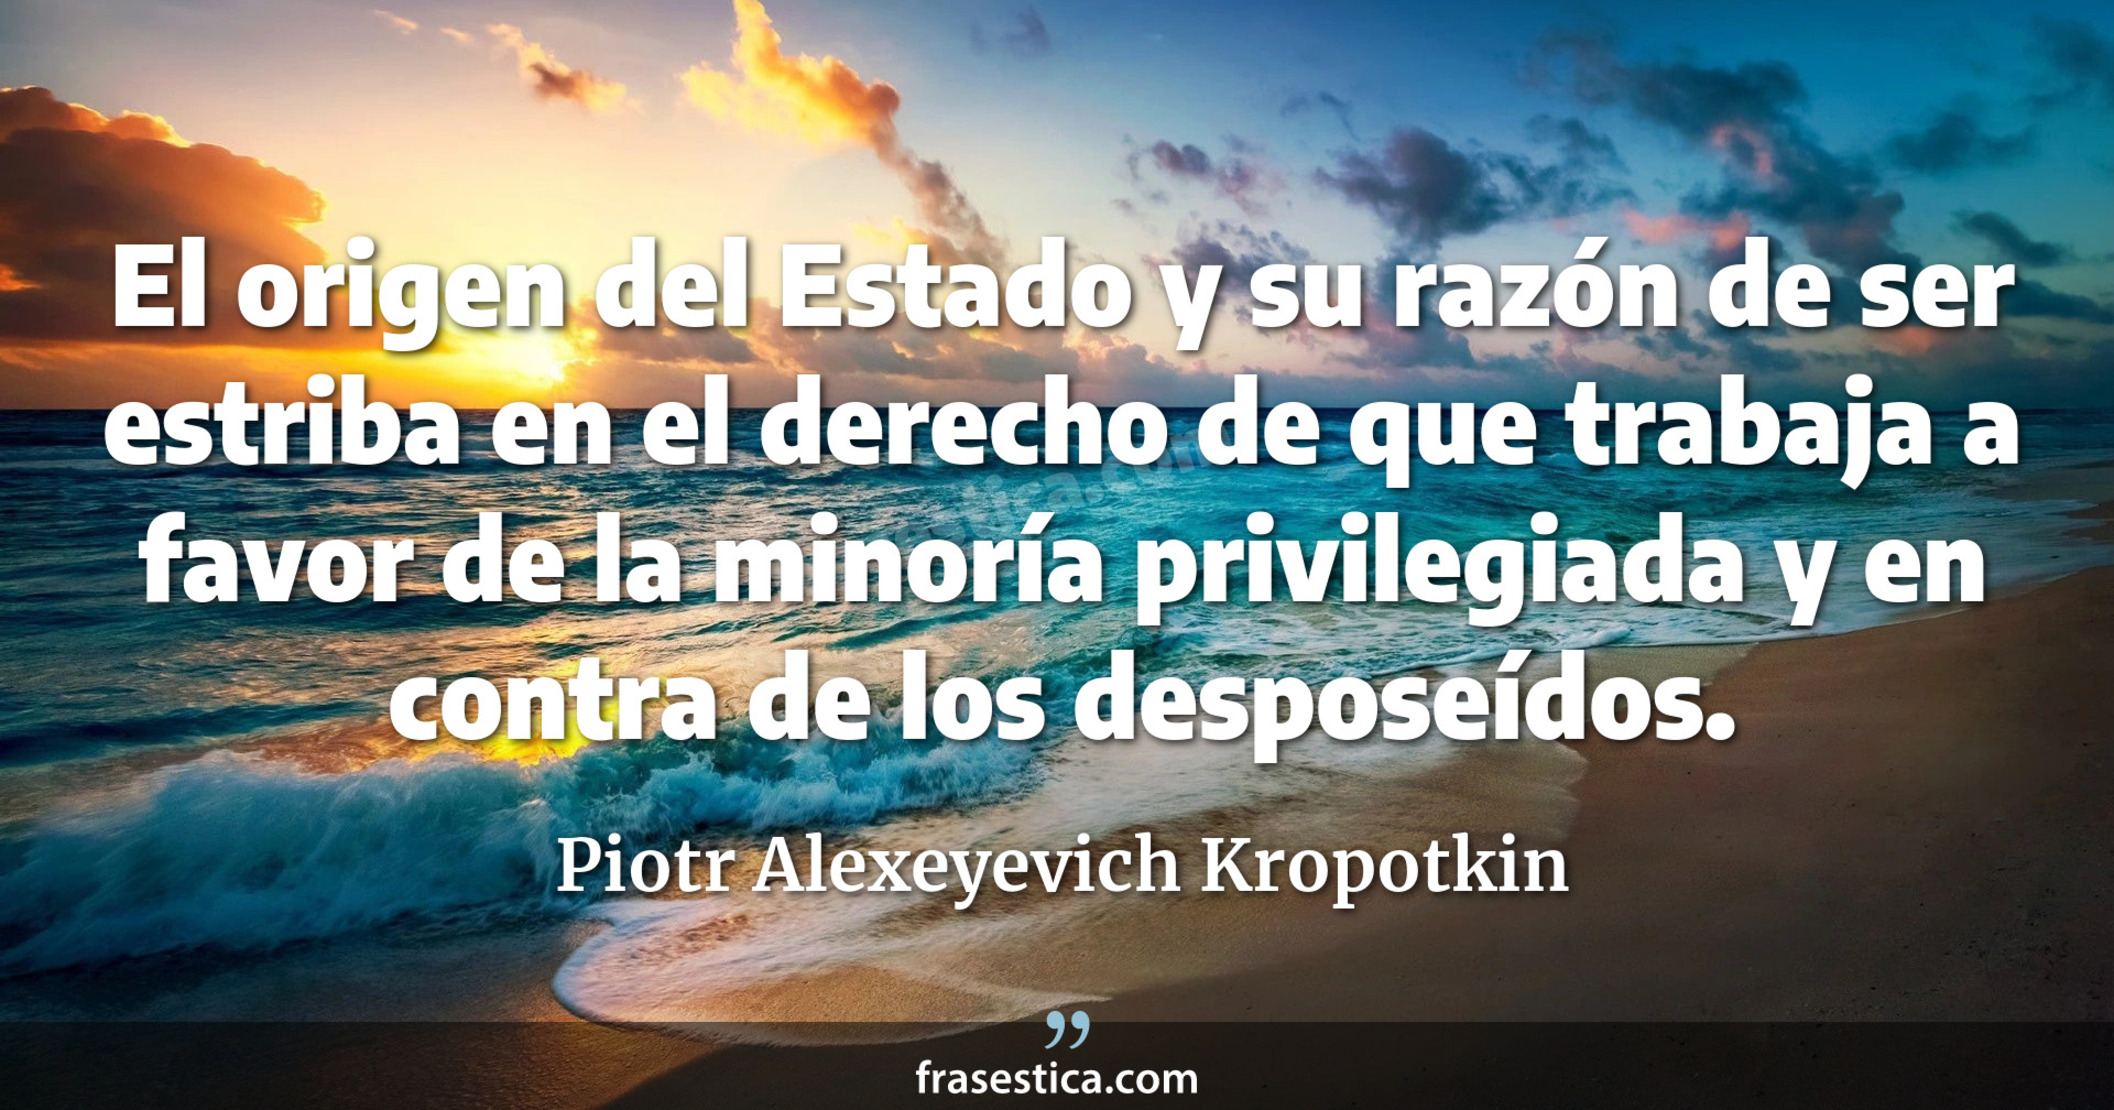 El origen del Estado y su razón de ser estriba en el derecho de que trabaja a favor de la minoría privilegiada y en contra de los desposeídos. - Piotr Alexeyevich Kropotkin